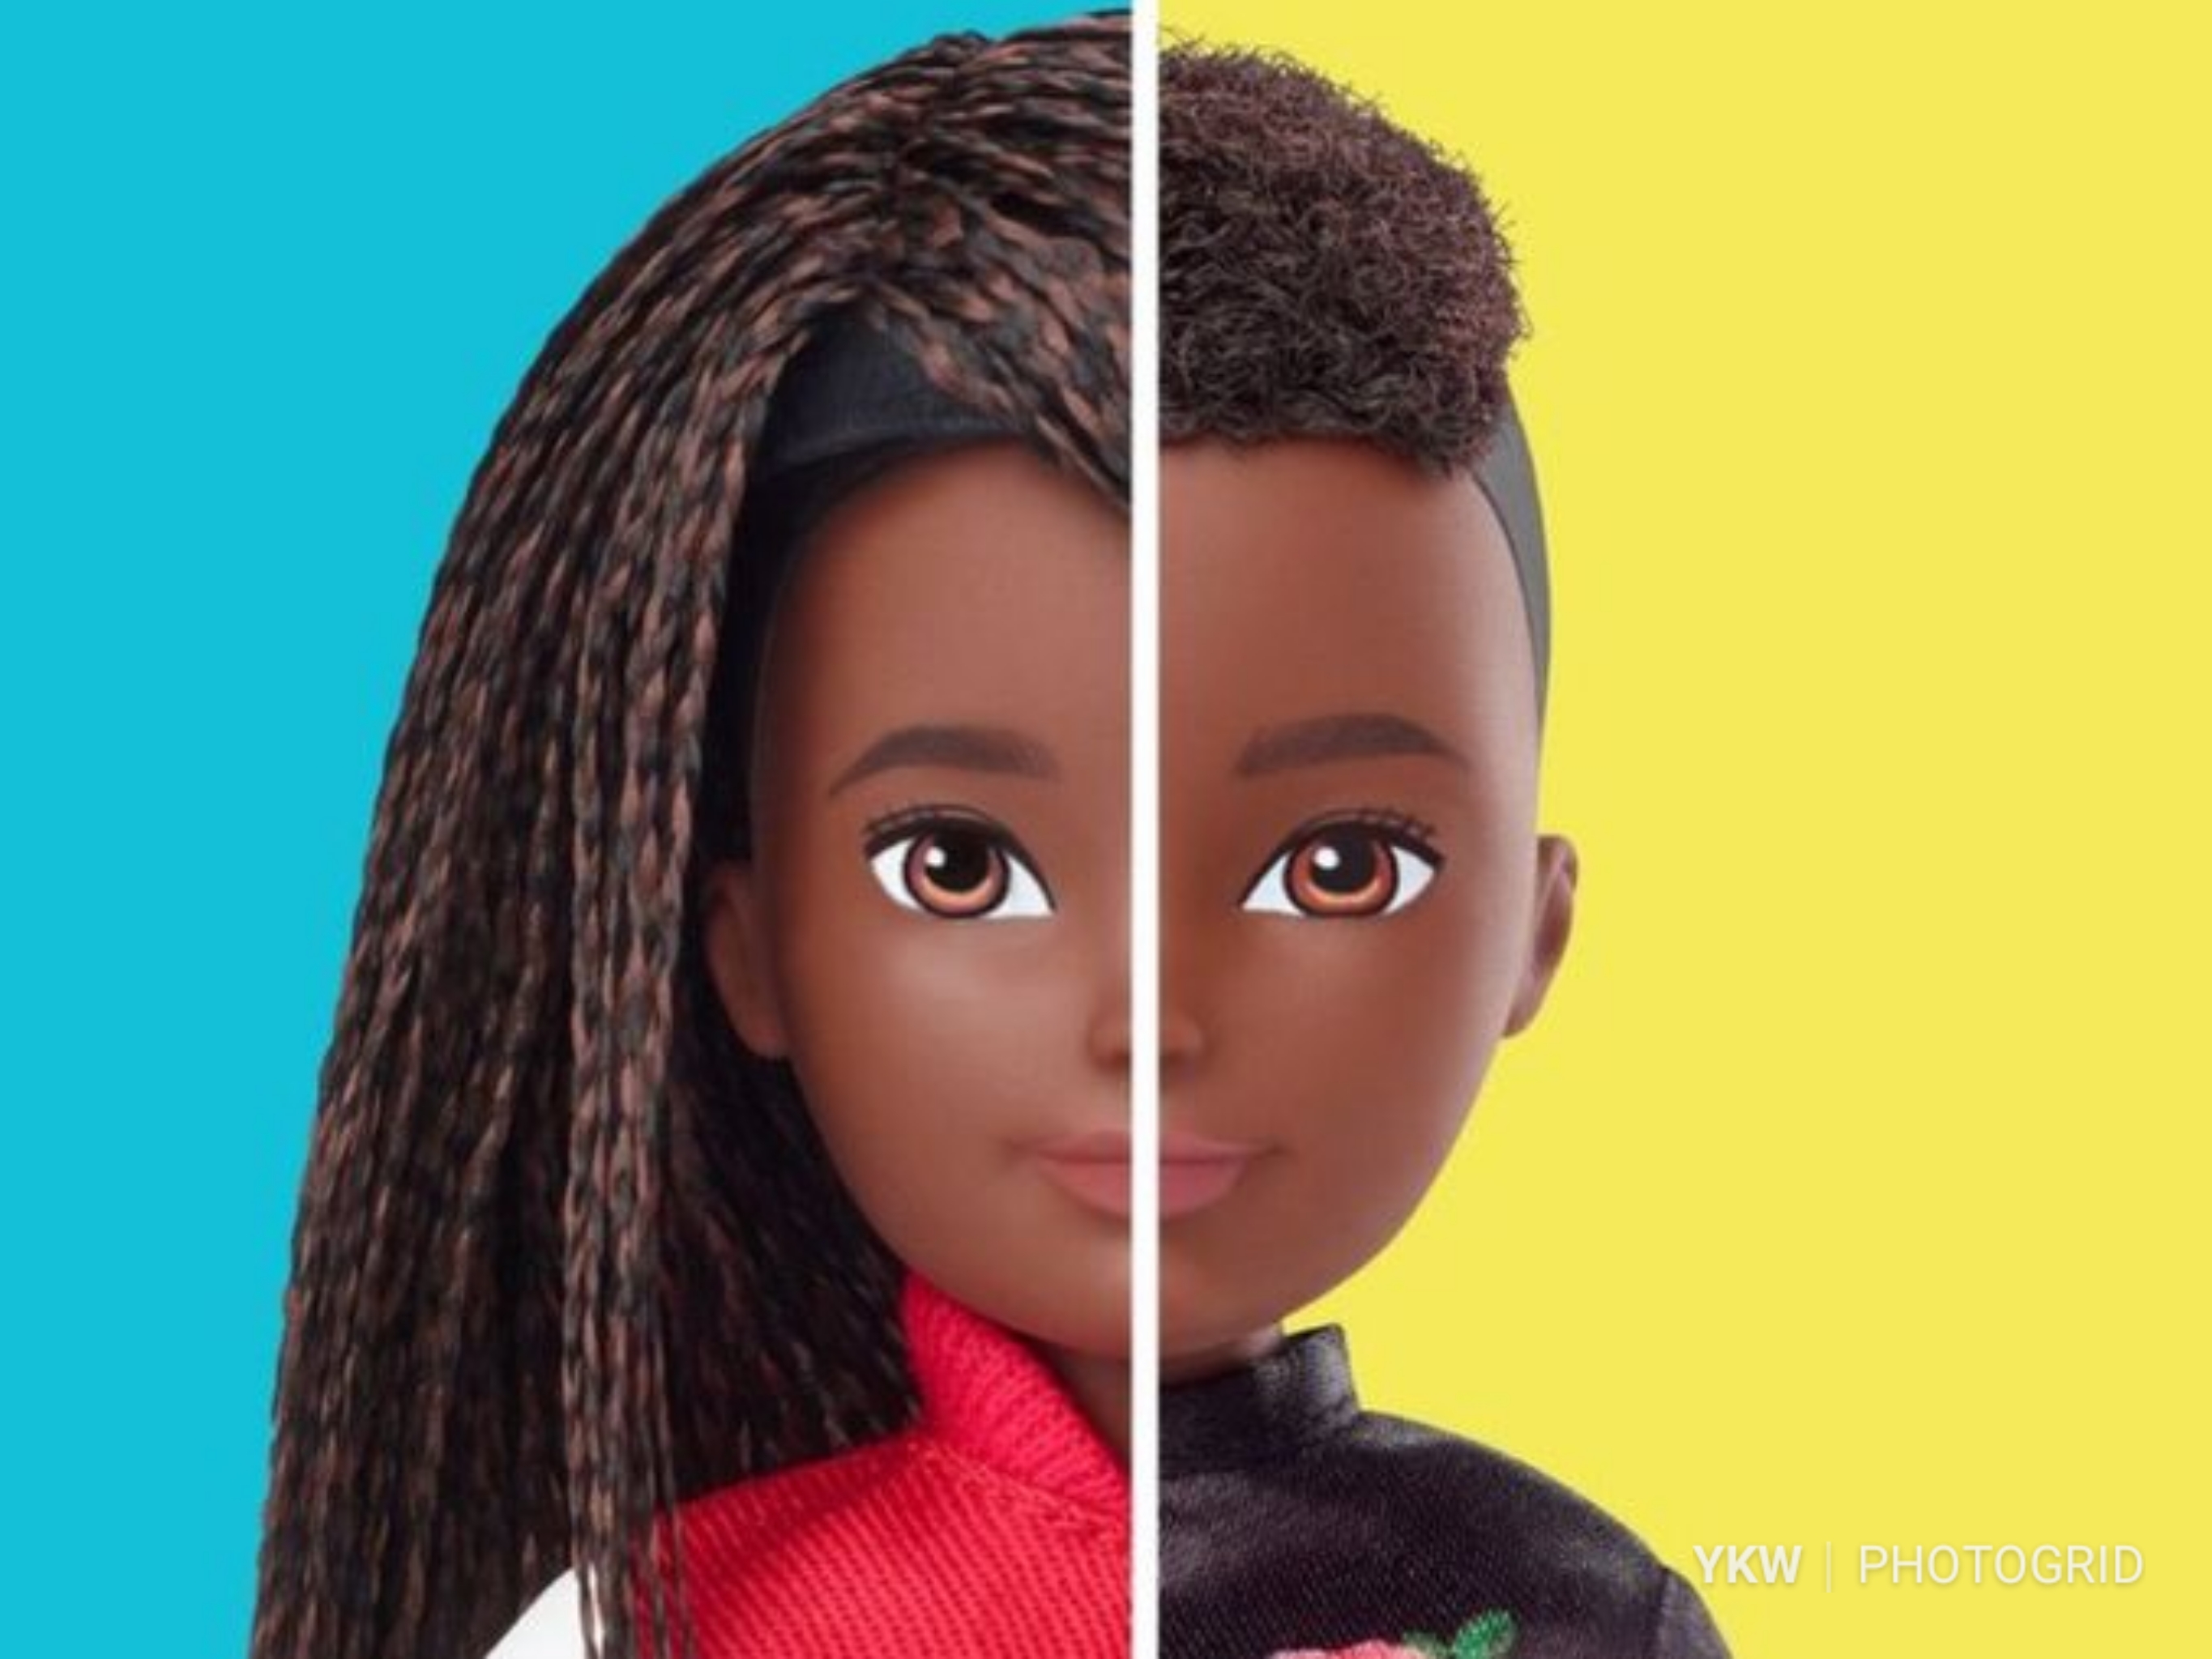 Say What? Mattel, Maker Of Barbie, Introduces Gender-Neutral Dolls For Kids